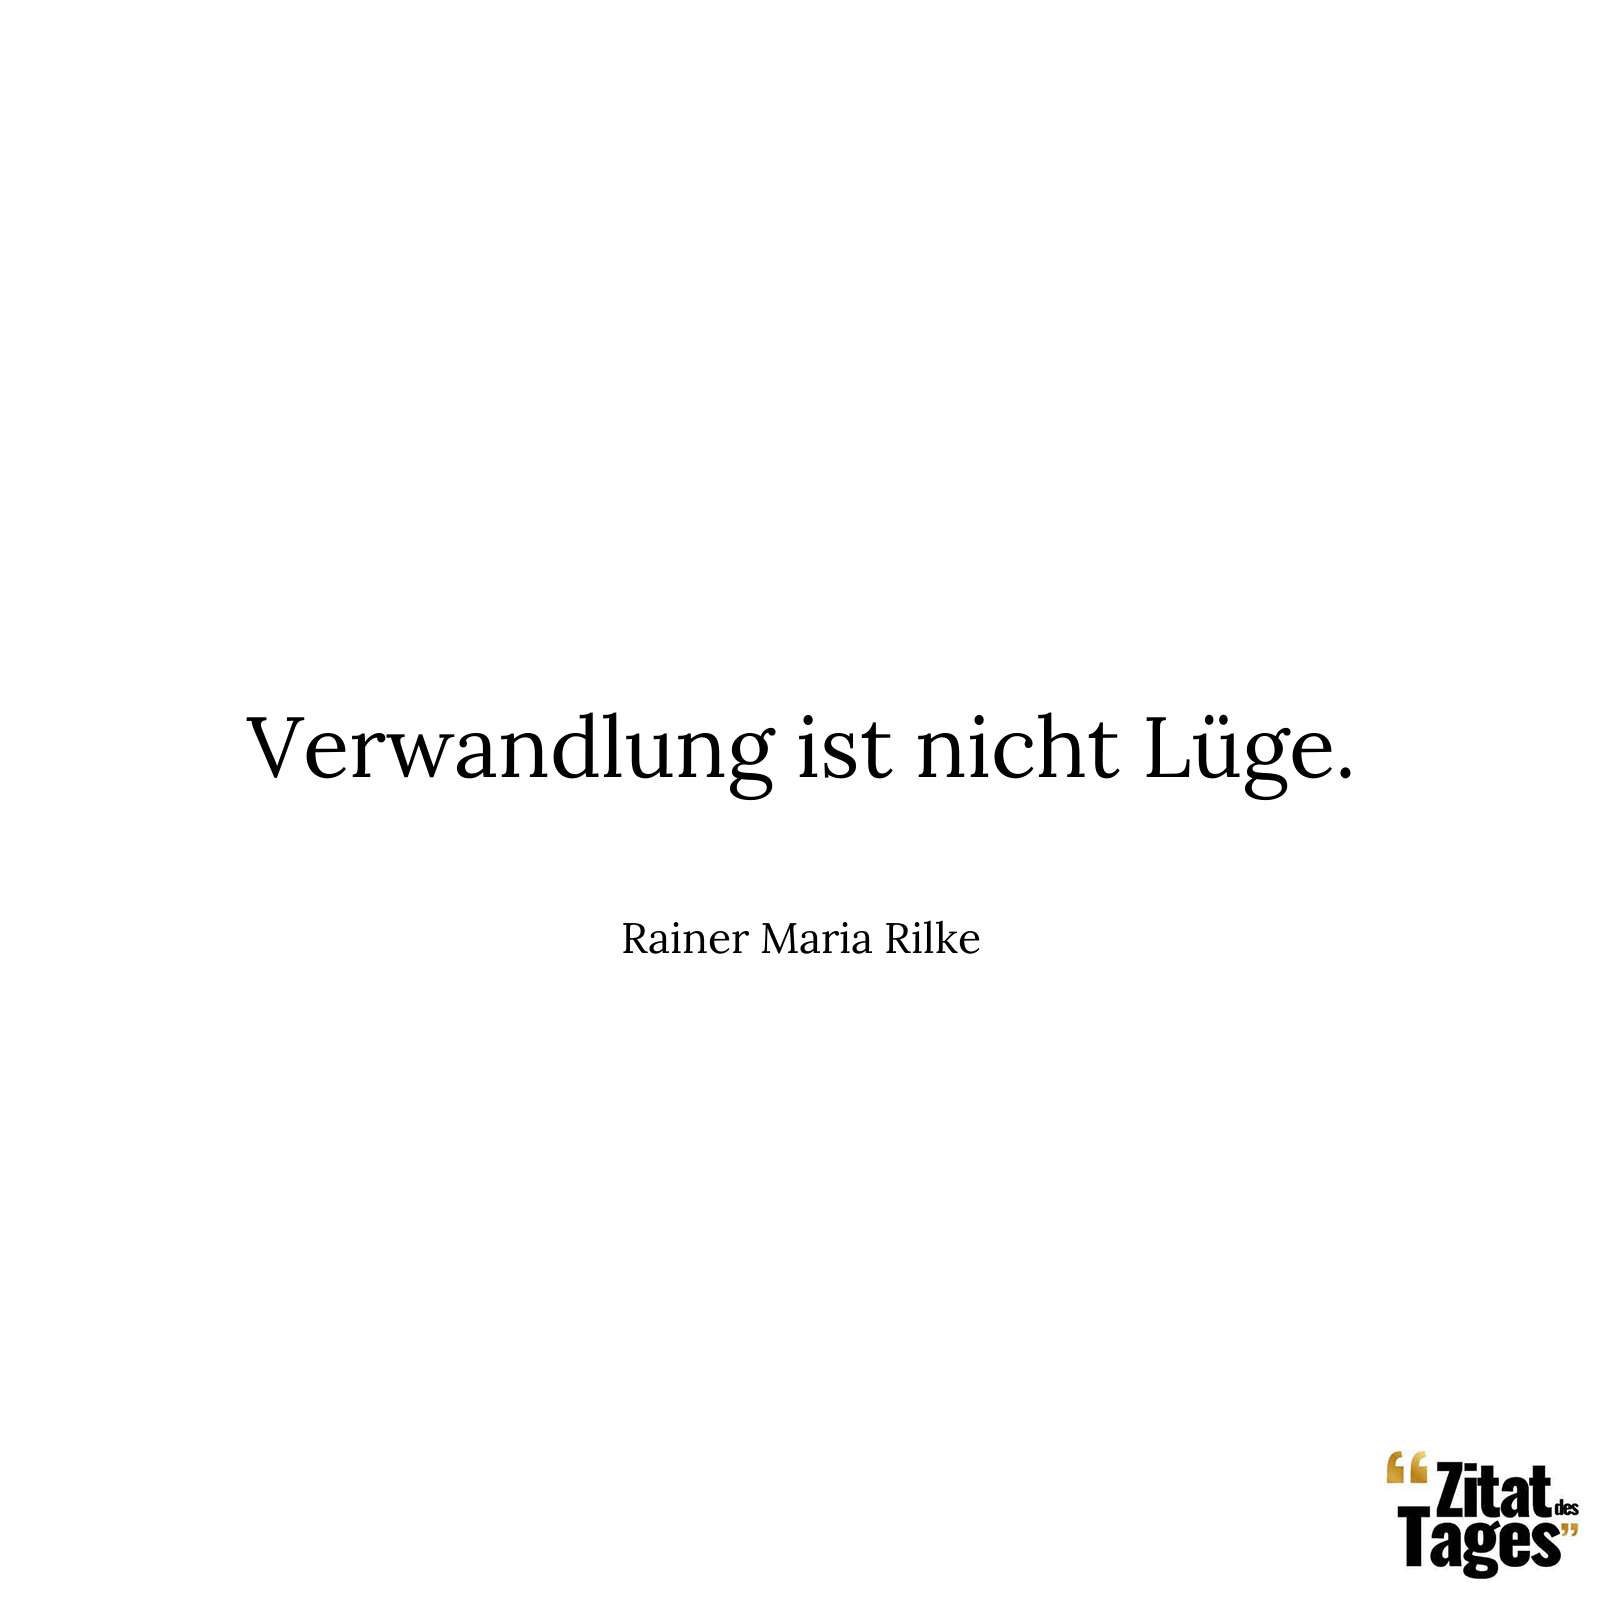 Verwandlung ist nicht Lüge. - Rainer Maria Rilke